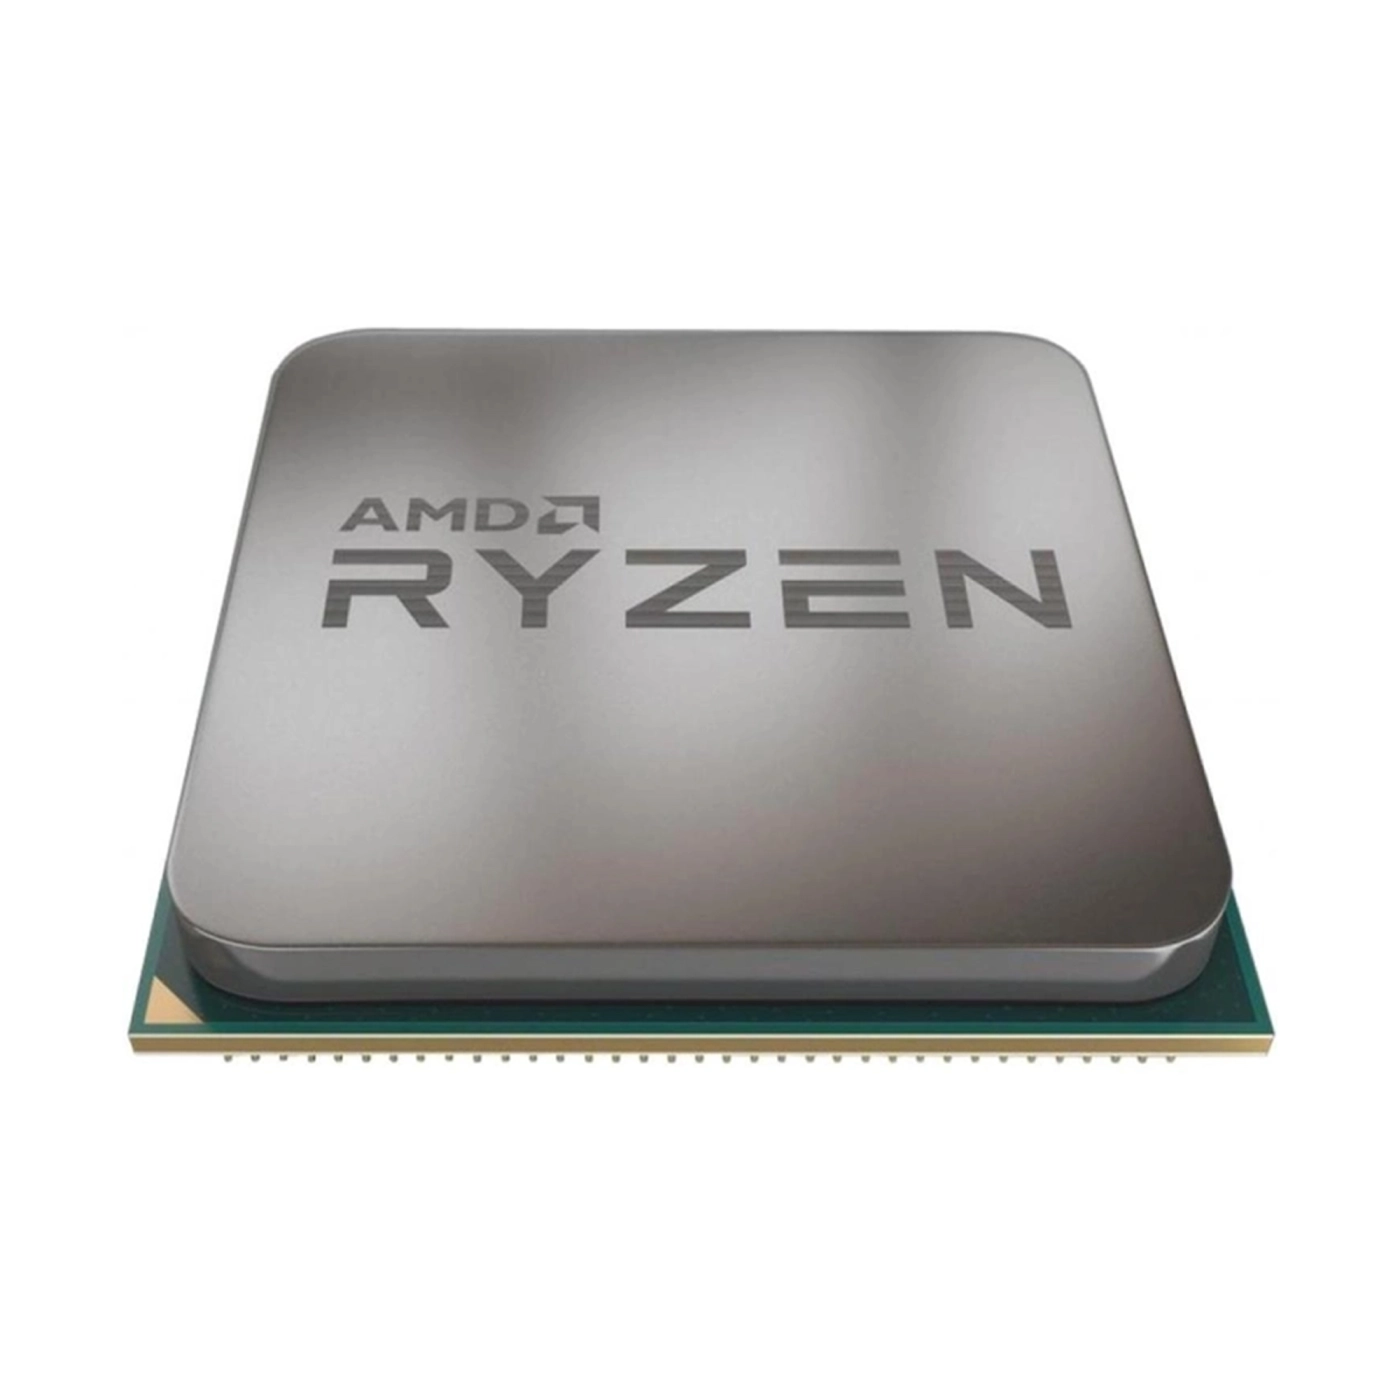 Купить Процессор AMD Ryzen 9 5900X (12C/24T, 3.7-4.8Ghz, 64MB, 105W, AM4) BOX - фото 3